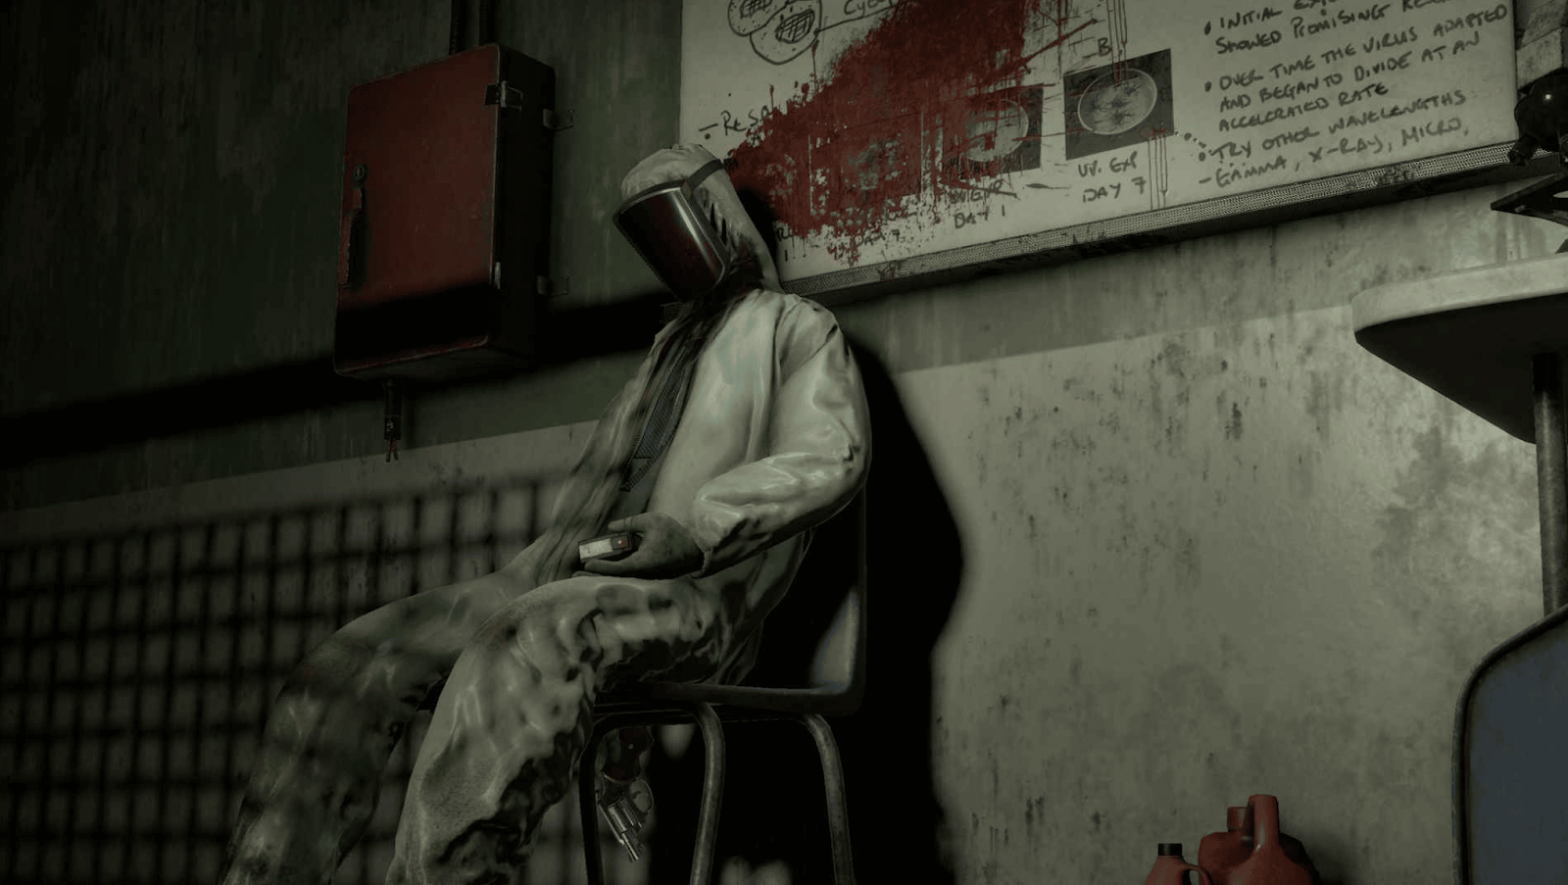 The Exorcist : Legion VR bénéficie d'une refonte visuelle dans le cadre de Quest pour Halloween